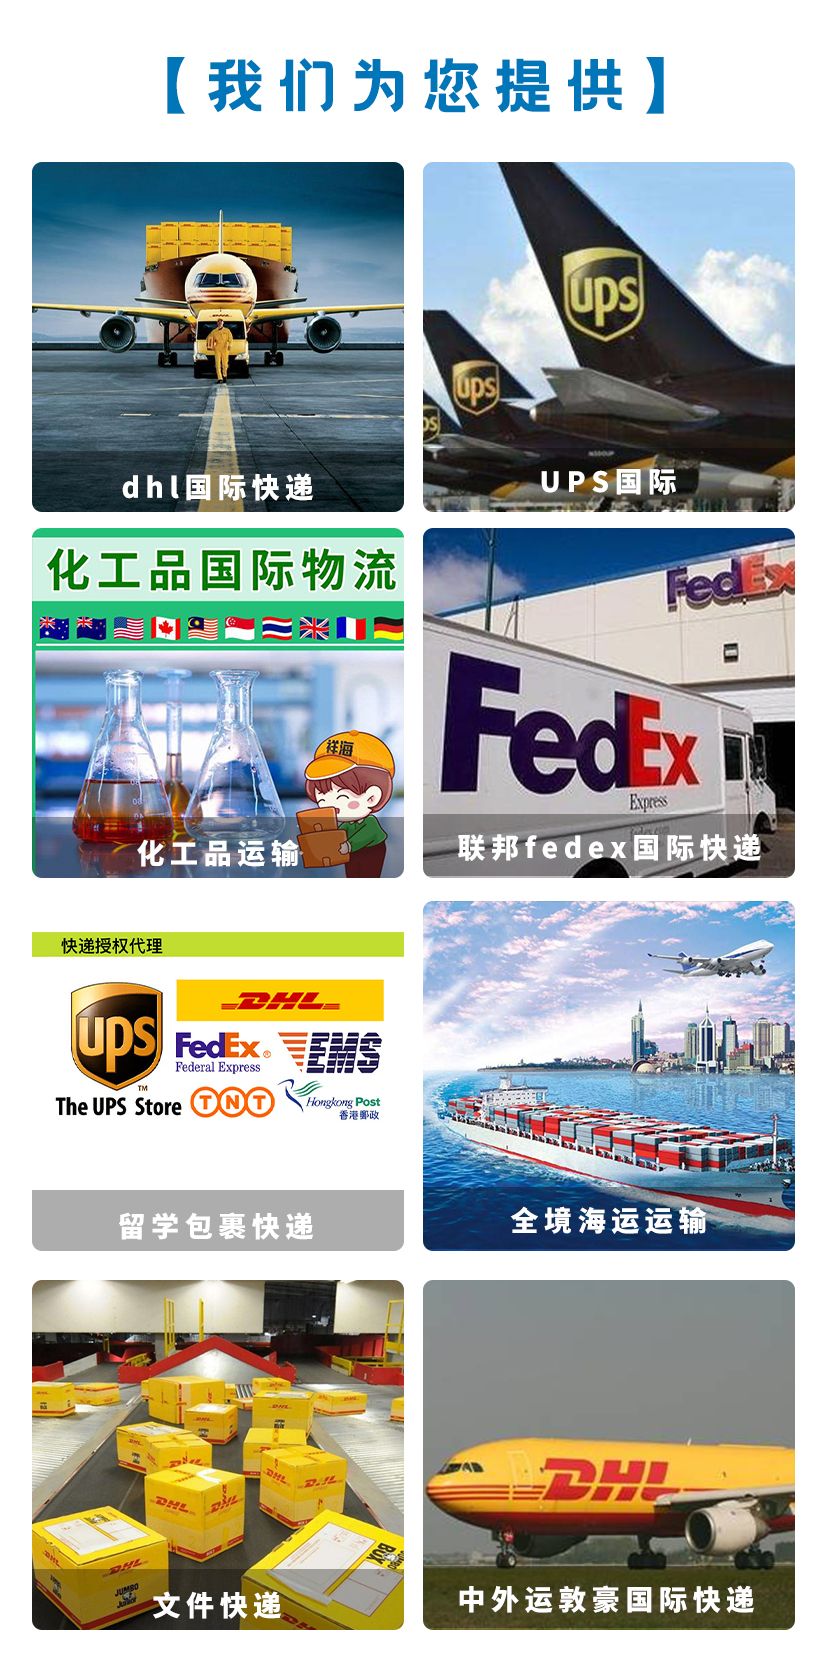 北京UPS国际快递-中外运敦豪国际快递网点-DHL国际快递电话2022已